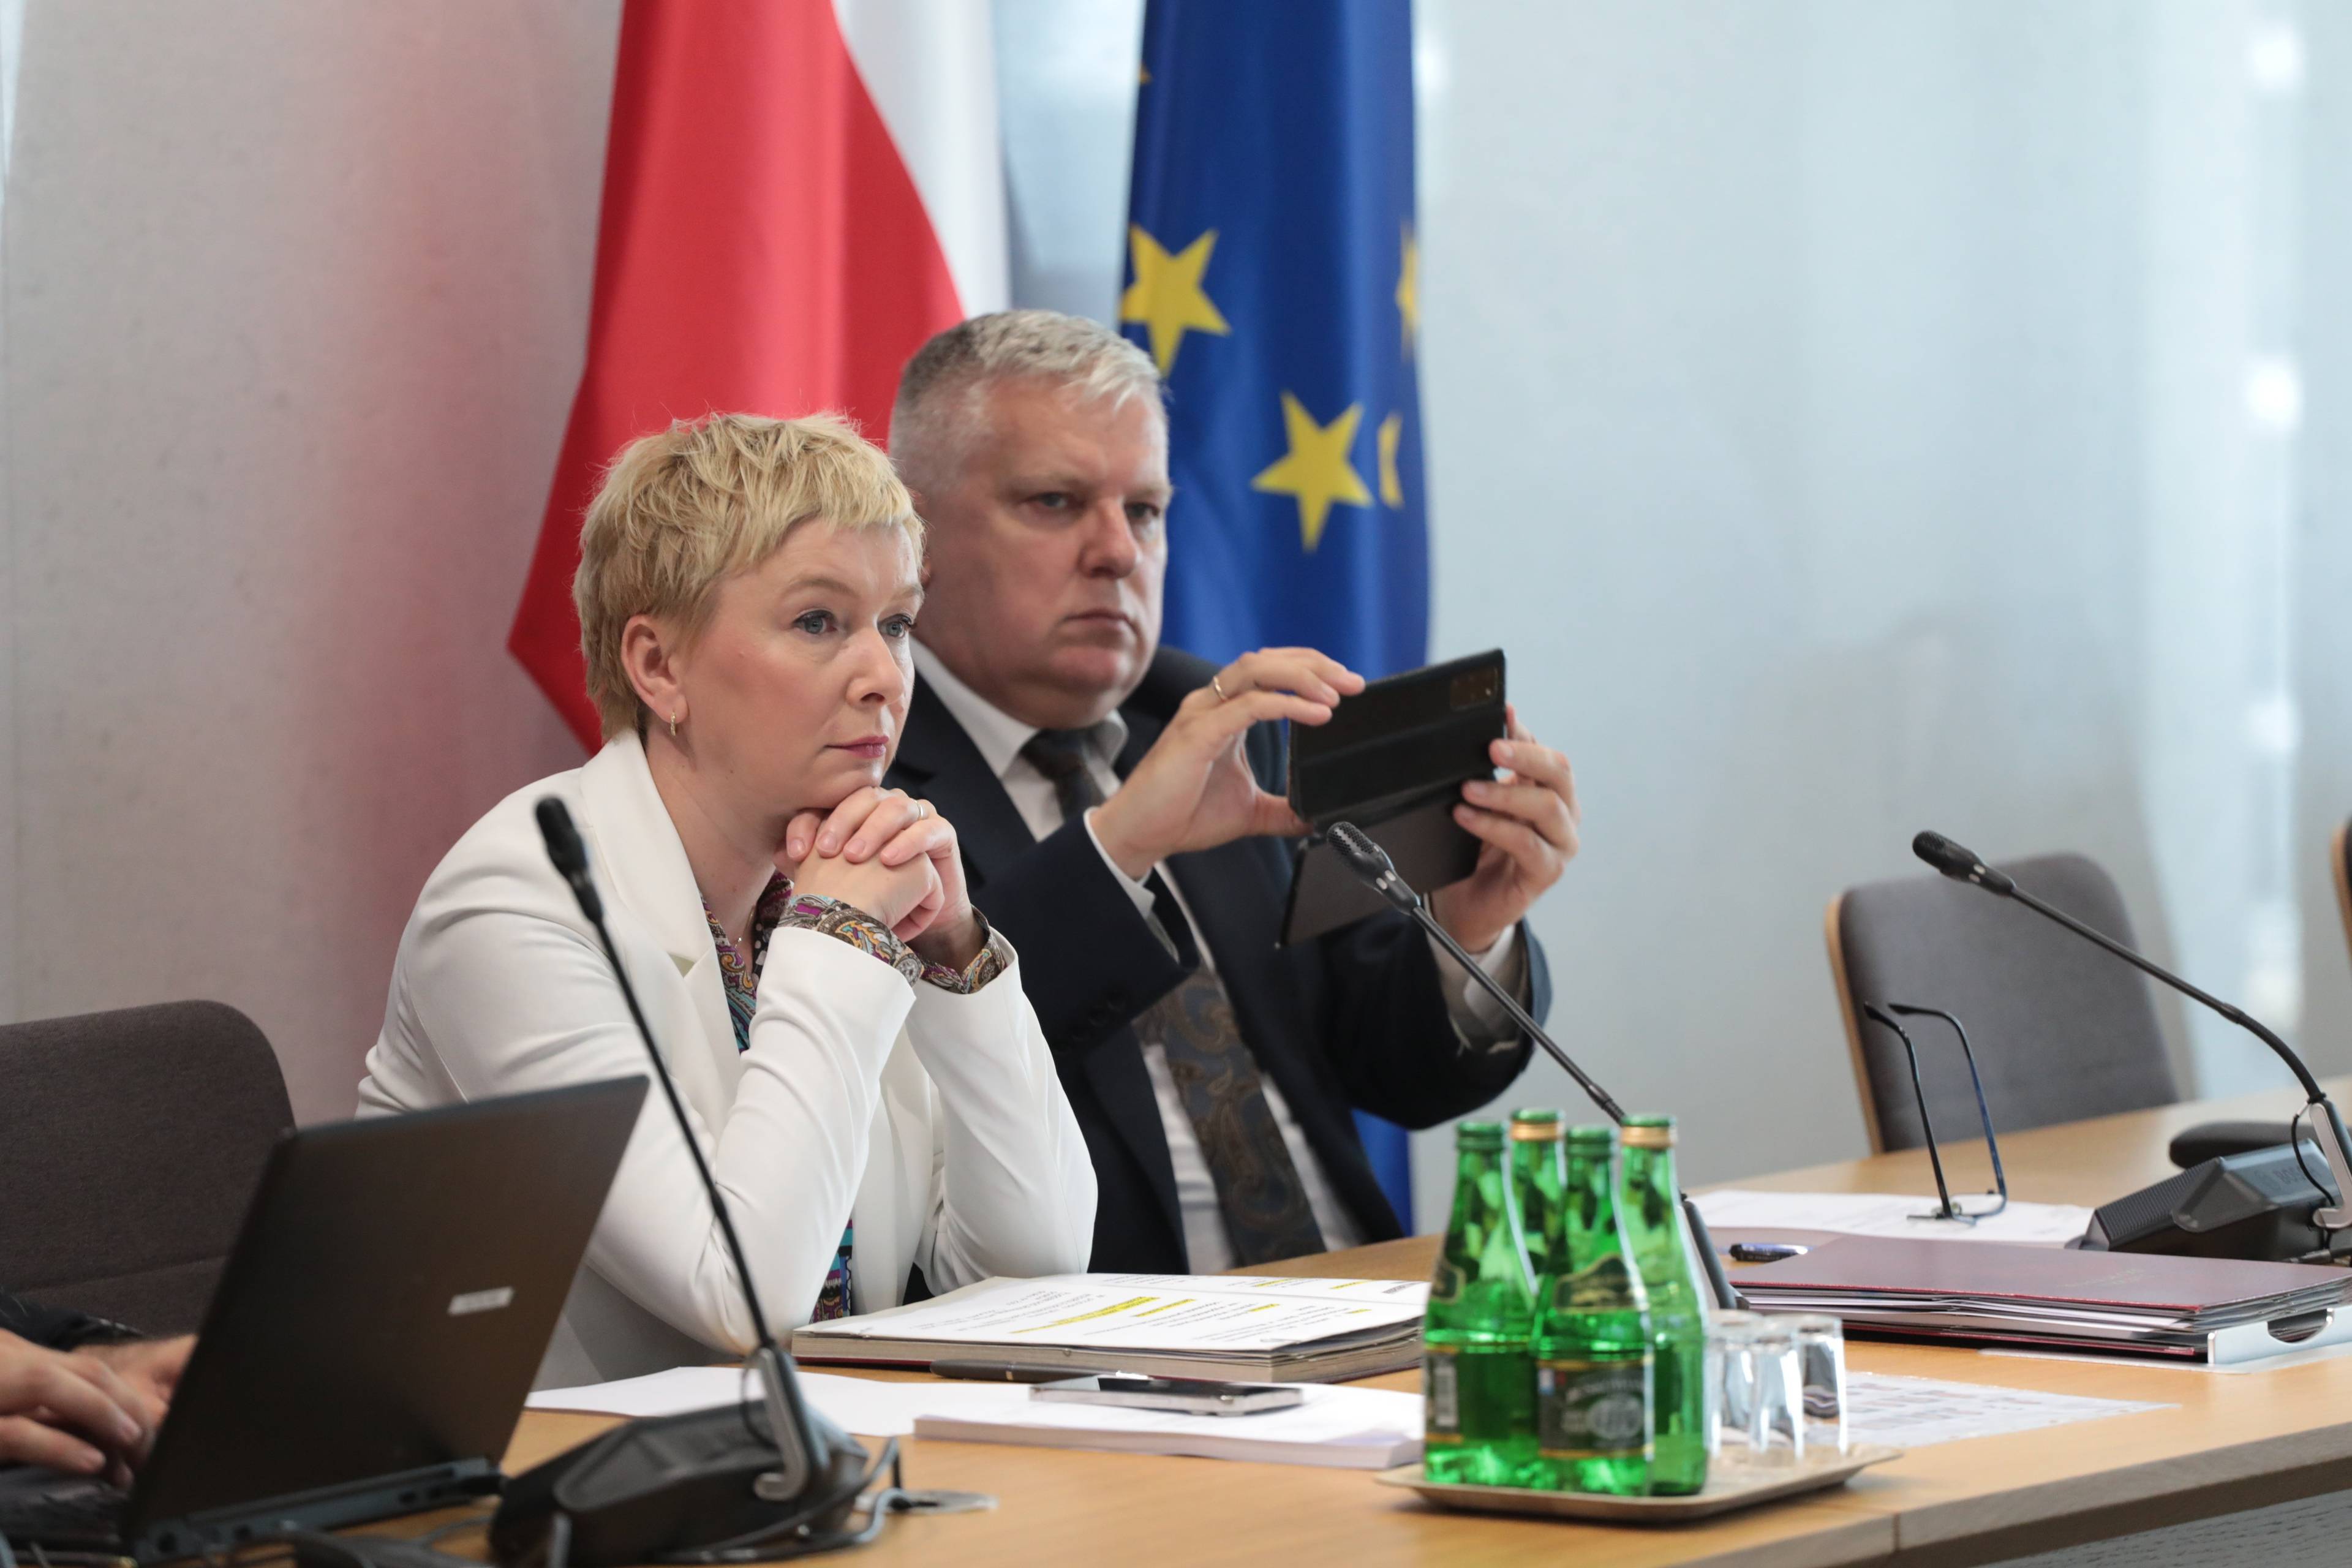 Kobieta w białej marynarce razem z mężczyzną w garniturze siedzą przy stole, mężczyzna robi zdjęcie smartfonem, w tle stoją flagi Polski i Unii Europejskiej